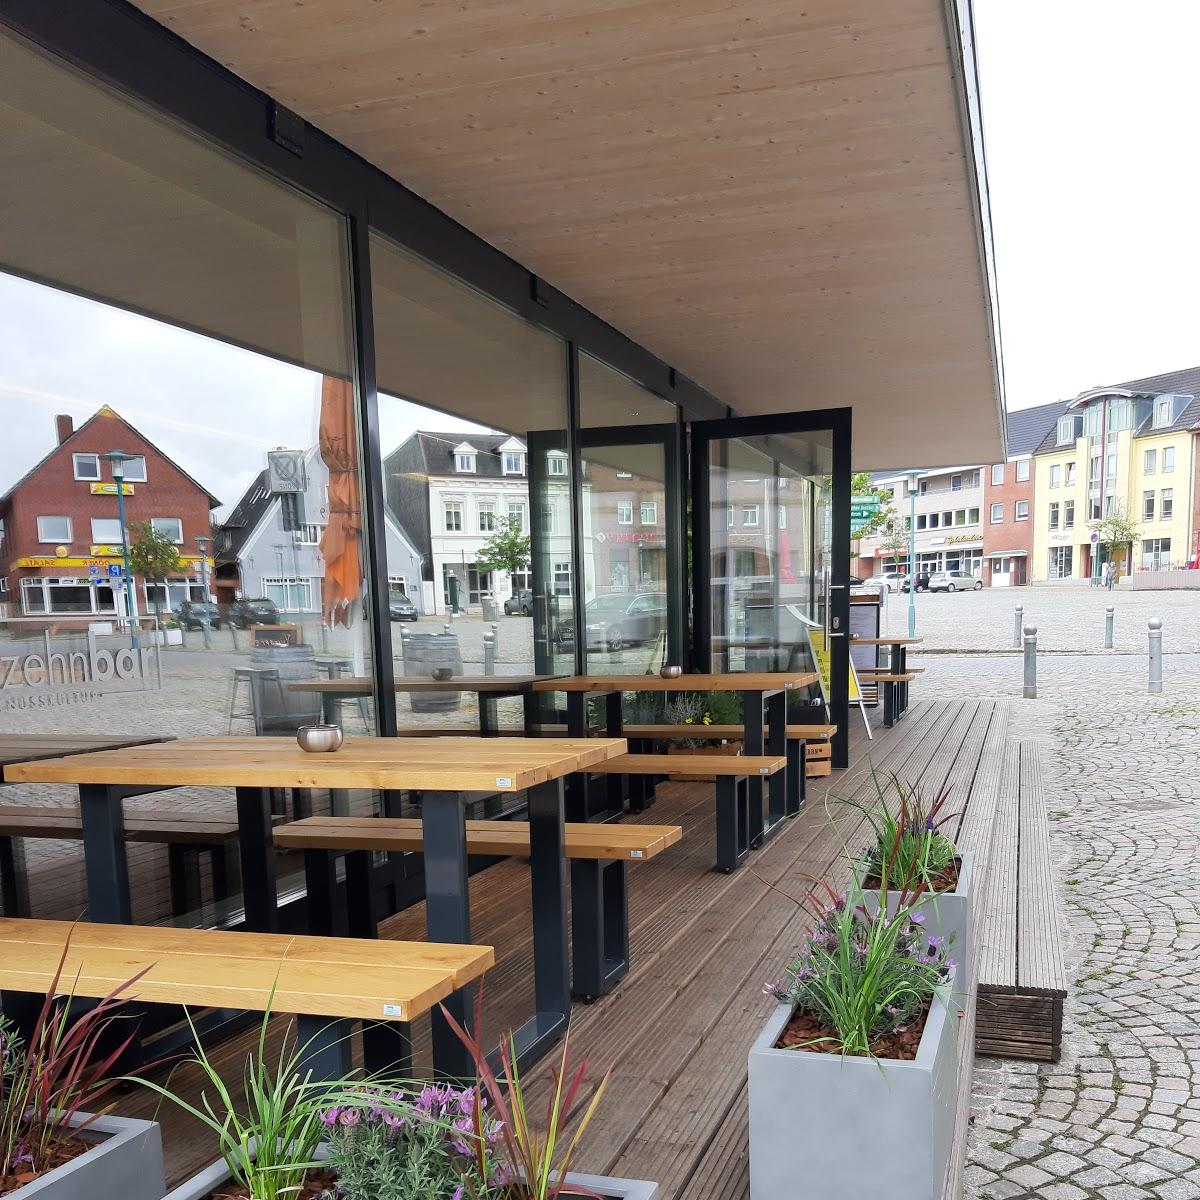 Restaurant "fünfzehnbar" in Bredstedt